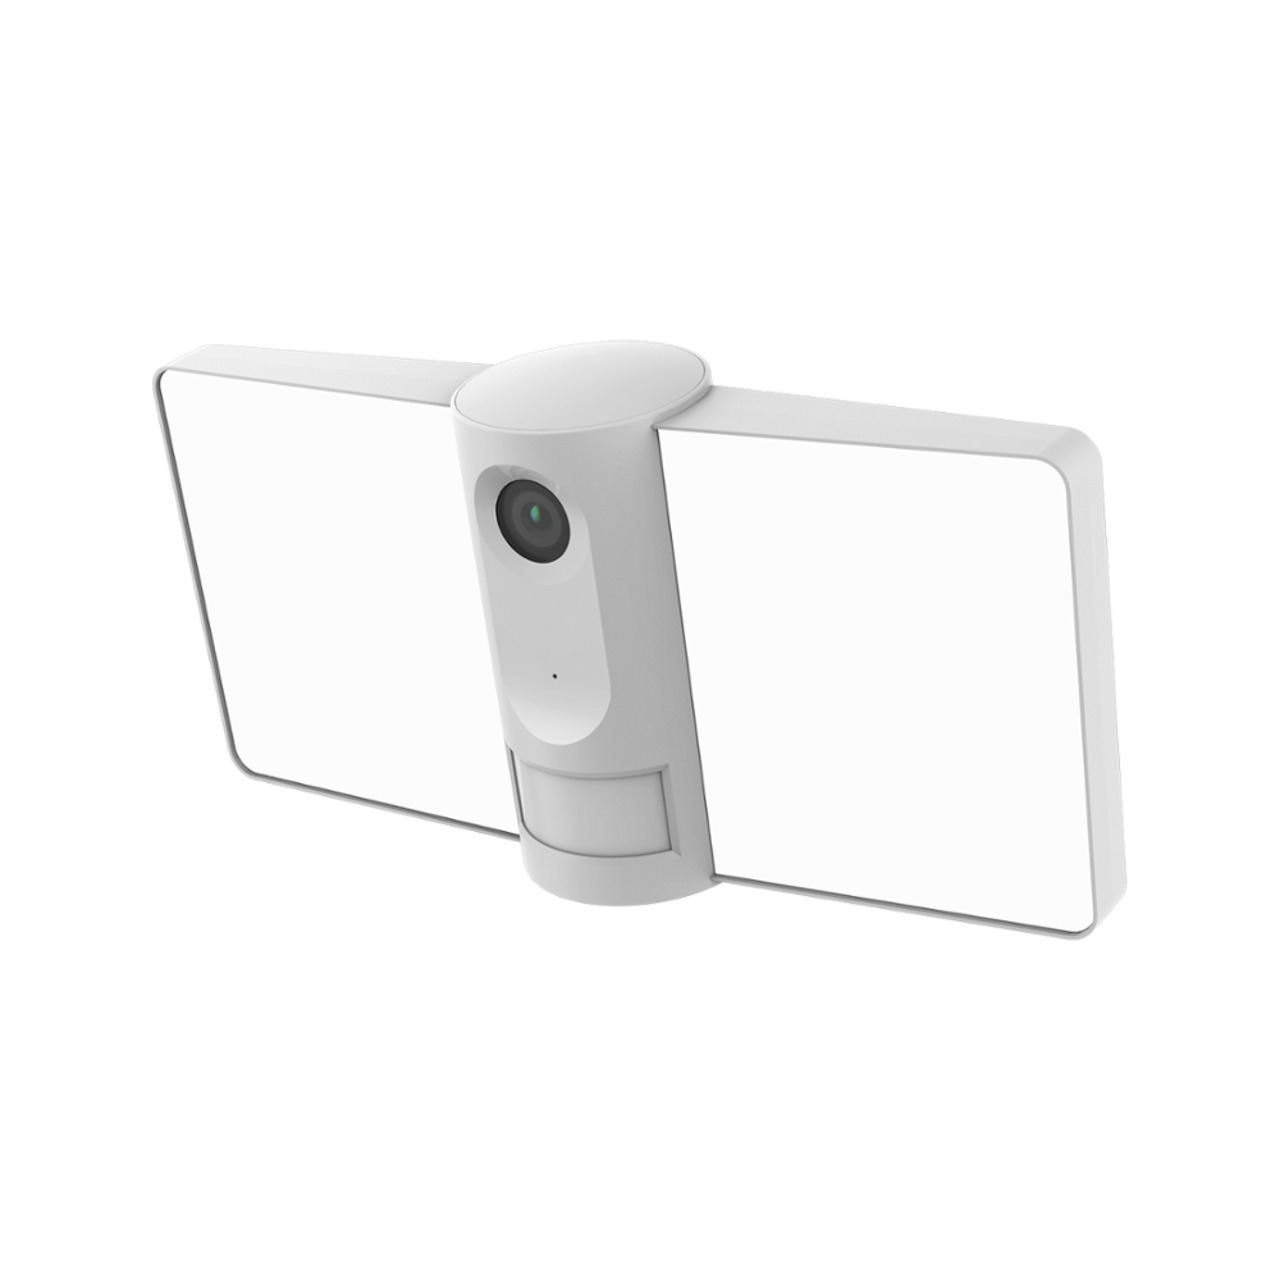 Laxihub WLAN-Aussen-Überwachungskamera mit LED-Scheinwerfer F1 - Full-HD (1080p)- App-Zugriff